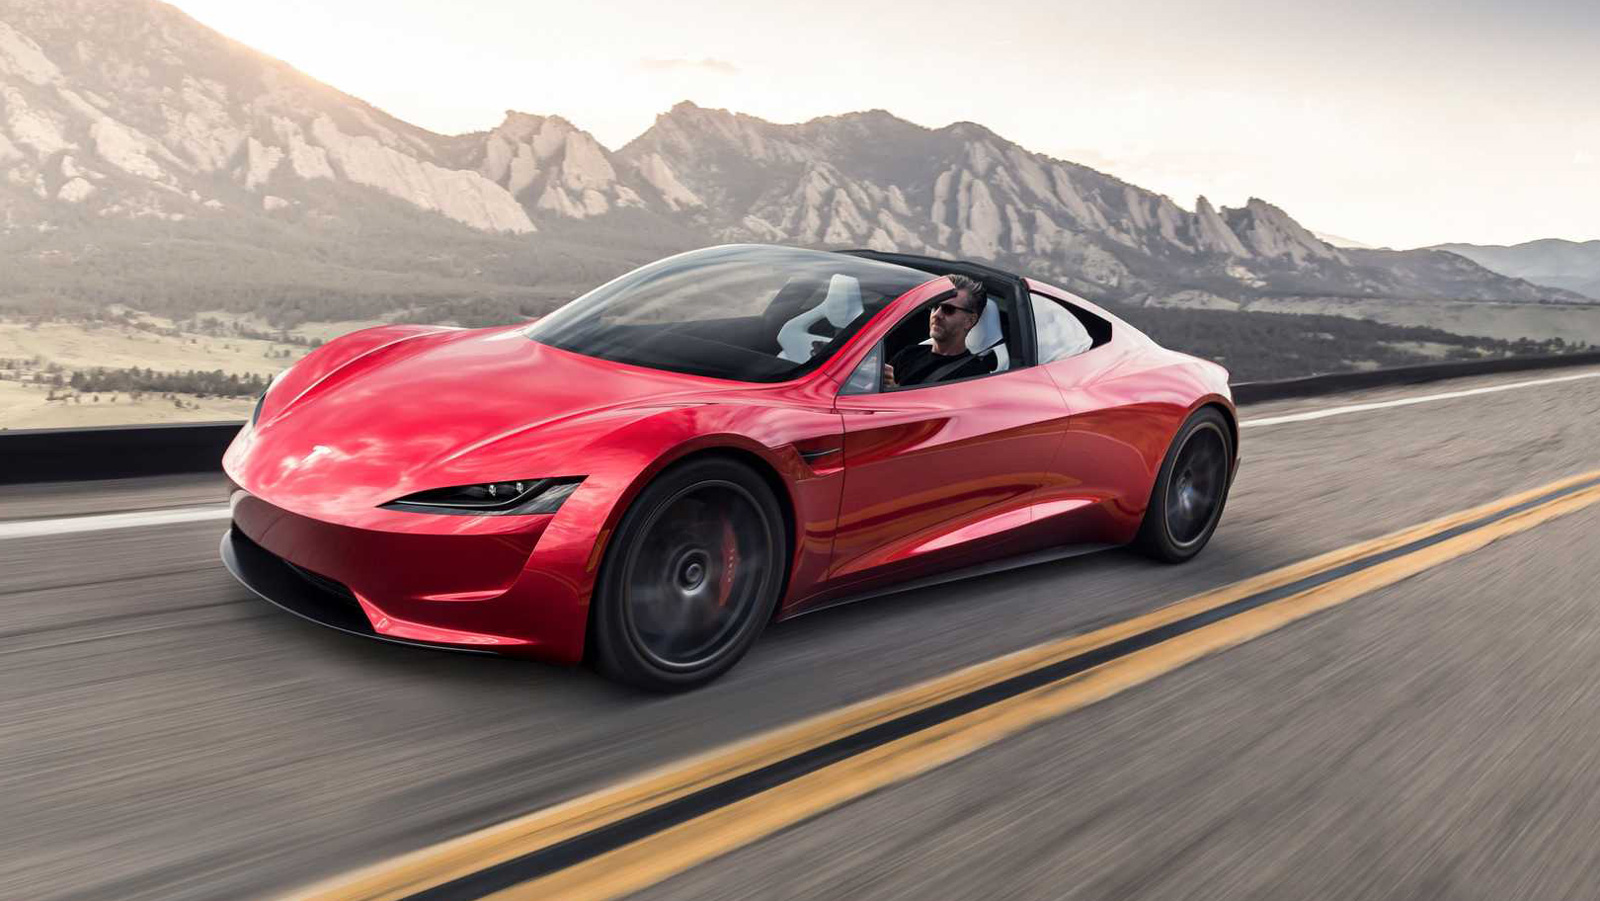 Tesla Roadster: Σε 1.1 δευτ. το 0-96χλμ./ώρα